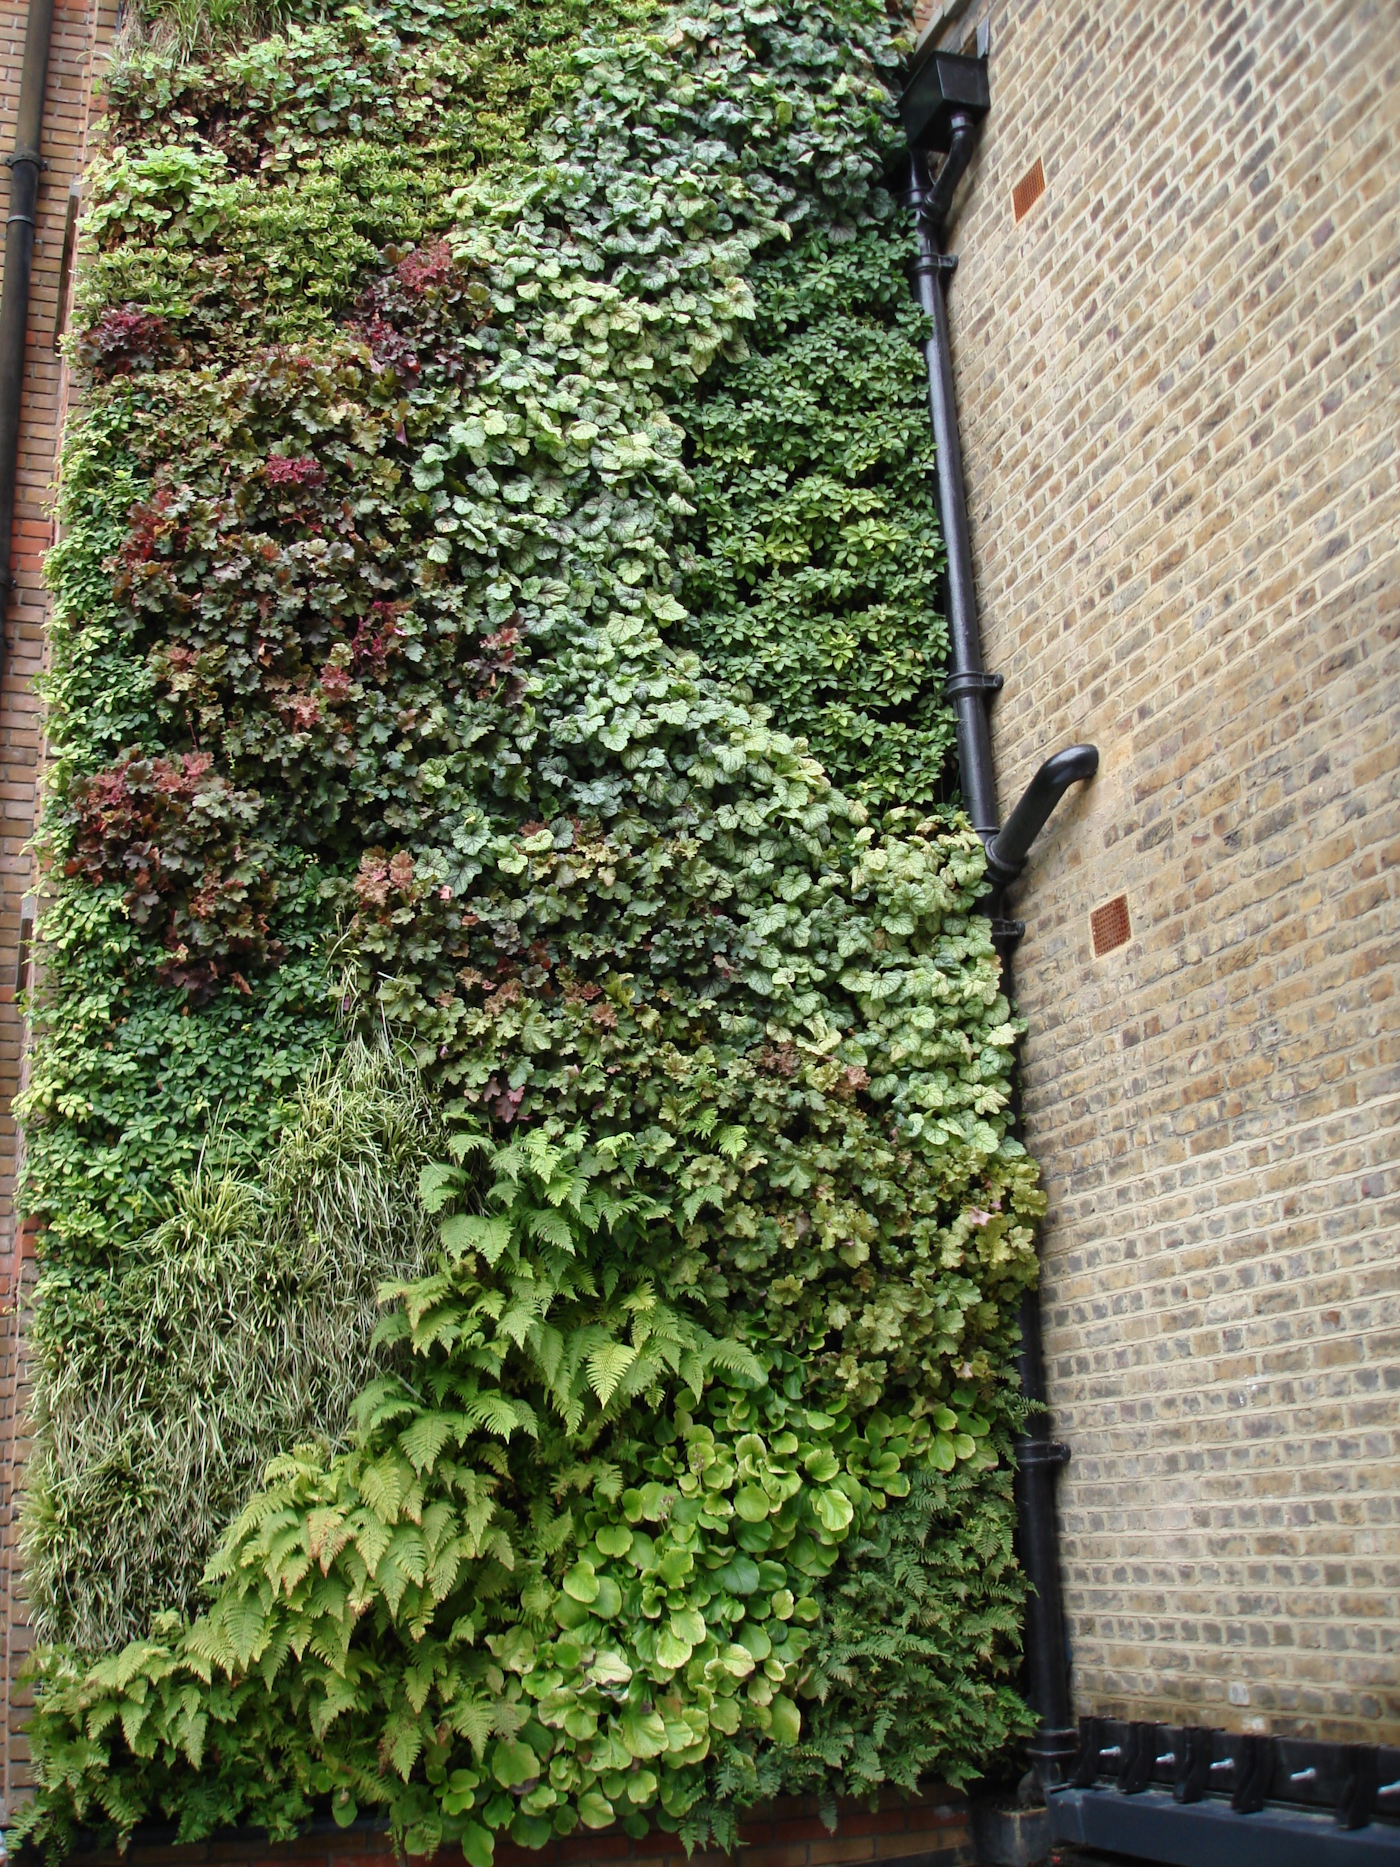 lush evergreen living green wall vertical garden alongside a brick wall